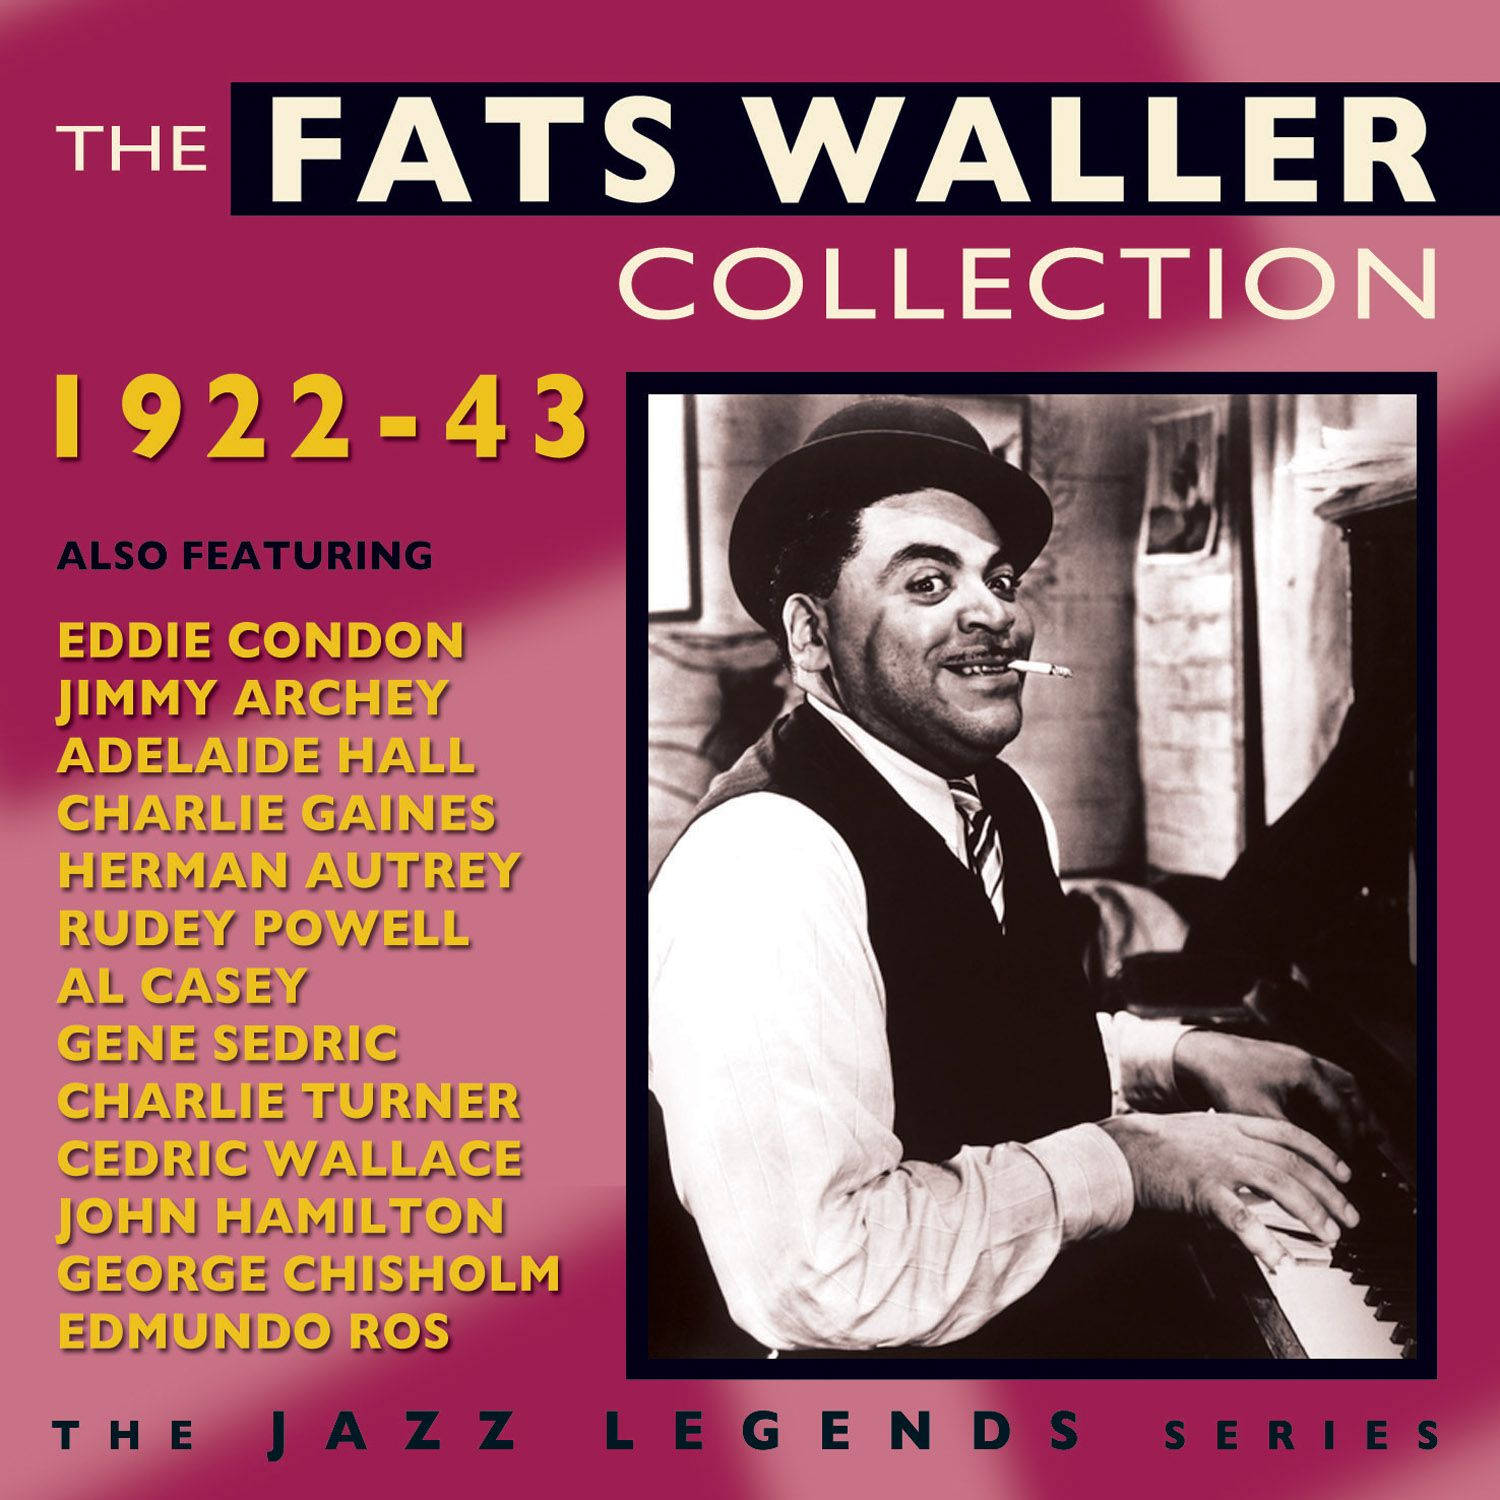 Den Jazz Legend Serie Fats Waller Collection. Wallpaper